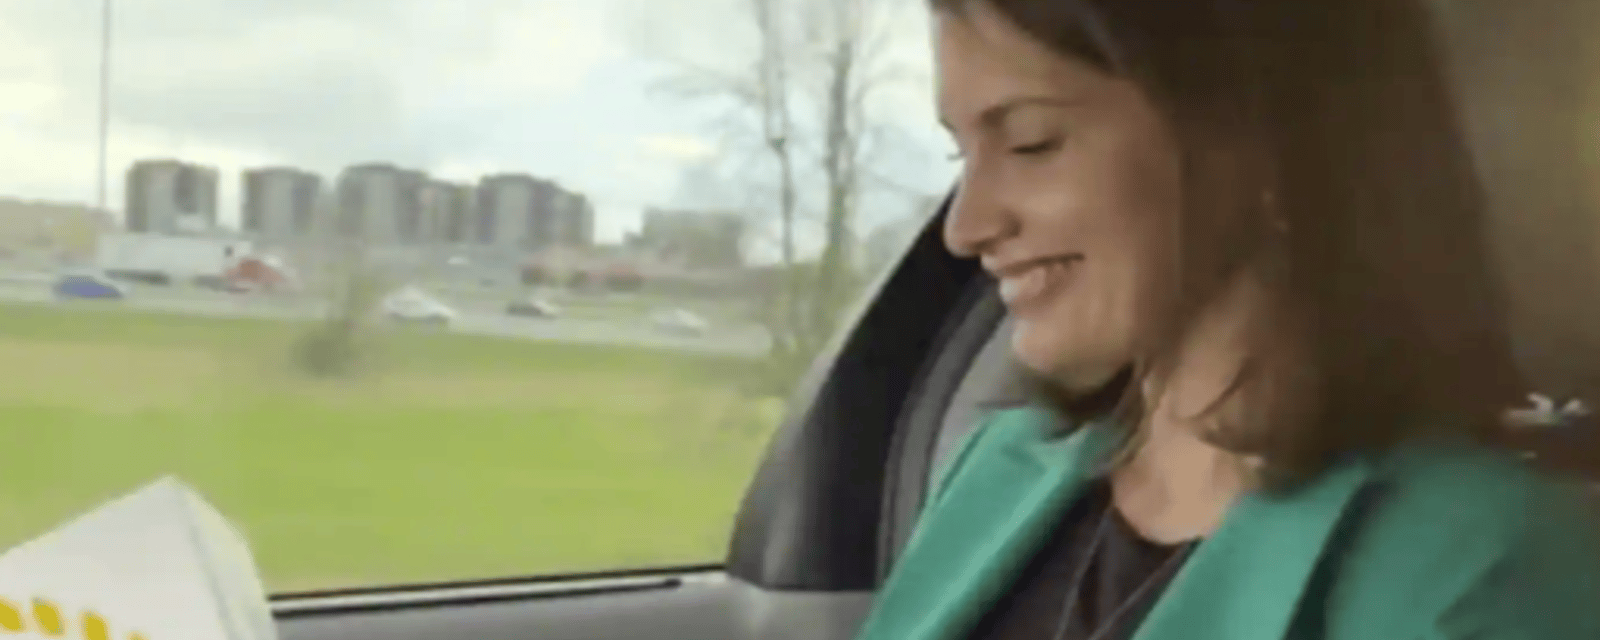 Geneviève Guilbault impliquée dans une controverse pour ne pas avoir porté sa ceinture de sécurité en voiture